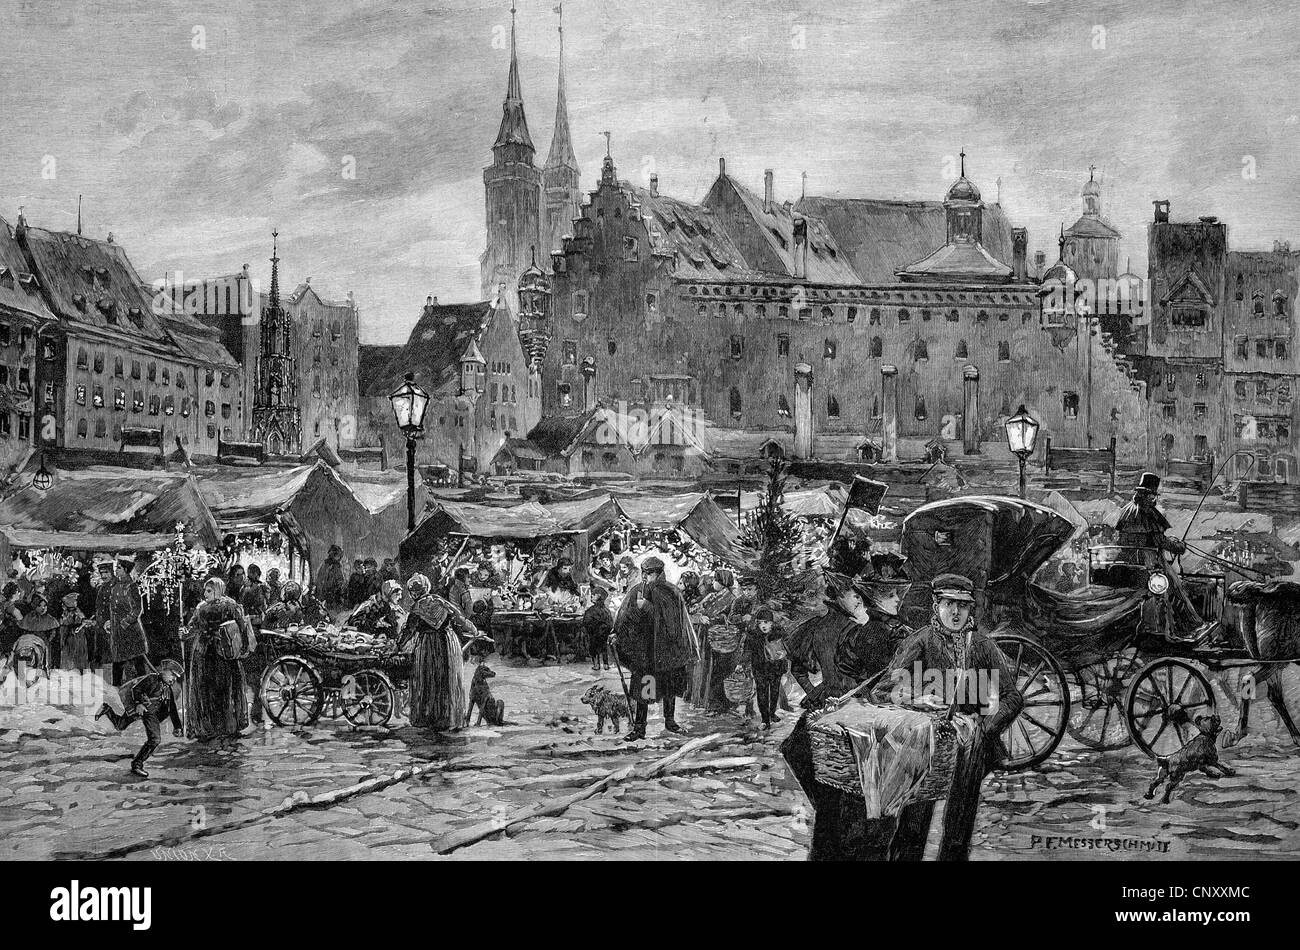 Kindleinsmarkt marché, St Thomas' day à Nuremberg, Bavière, Allemagne, historique de la gravure sur bois, vers 1897 Banque D'Images